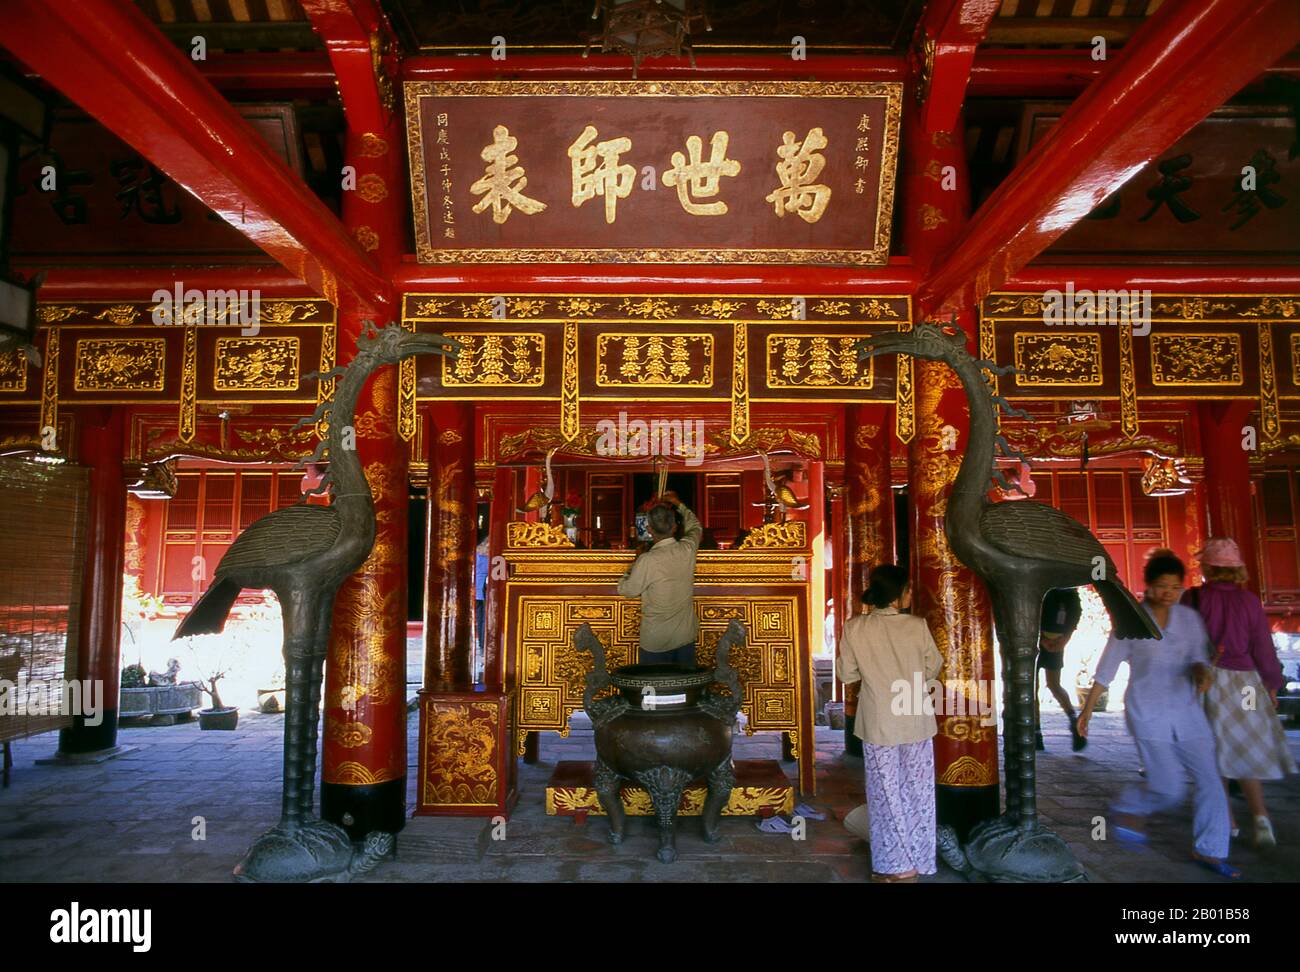 Vietnam: Altar für Konfuzius, großes Zeremonienhaus, Literaturtempel (Van Mieu), Hanoi. Der Tempel der Literatur oder Van Mieu ist einer der wichtigsten kulturellen Schätze Vietnams. Der Tempel wurde 1070 von König Ly Thanh Tong aus der frühen Ly-Dynastie gegründet und war ursprünglich sowohl Konfuzius als auch Chu Cong gewidmet, einem Mitglied der chinesischen Königsfamilie, der viele der Lehren zugeschrieben wurde, die Konfuzius fünfhundert Jahre später entwickelte. Die Stätte wurde von Geomankern der Ly-Dynastie ausgewählt, um in Harmonie mit dem taoistischen Bich CAU-Tempel und der buddhistischen ein-Säulen-Pagode zu stehen. Stockfoto